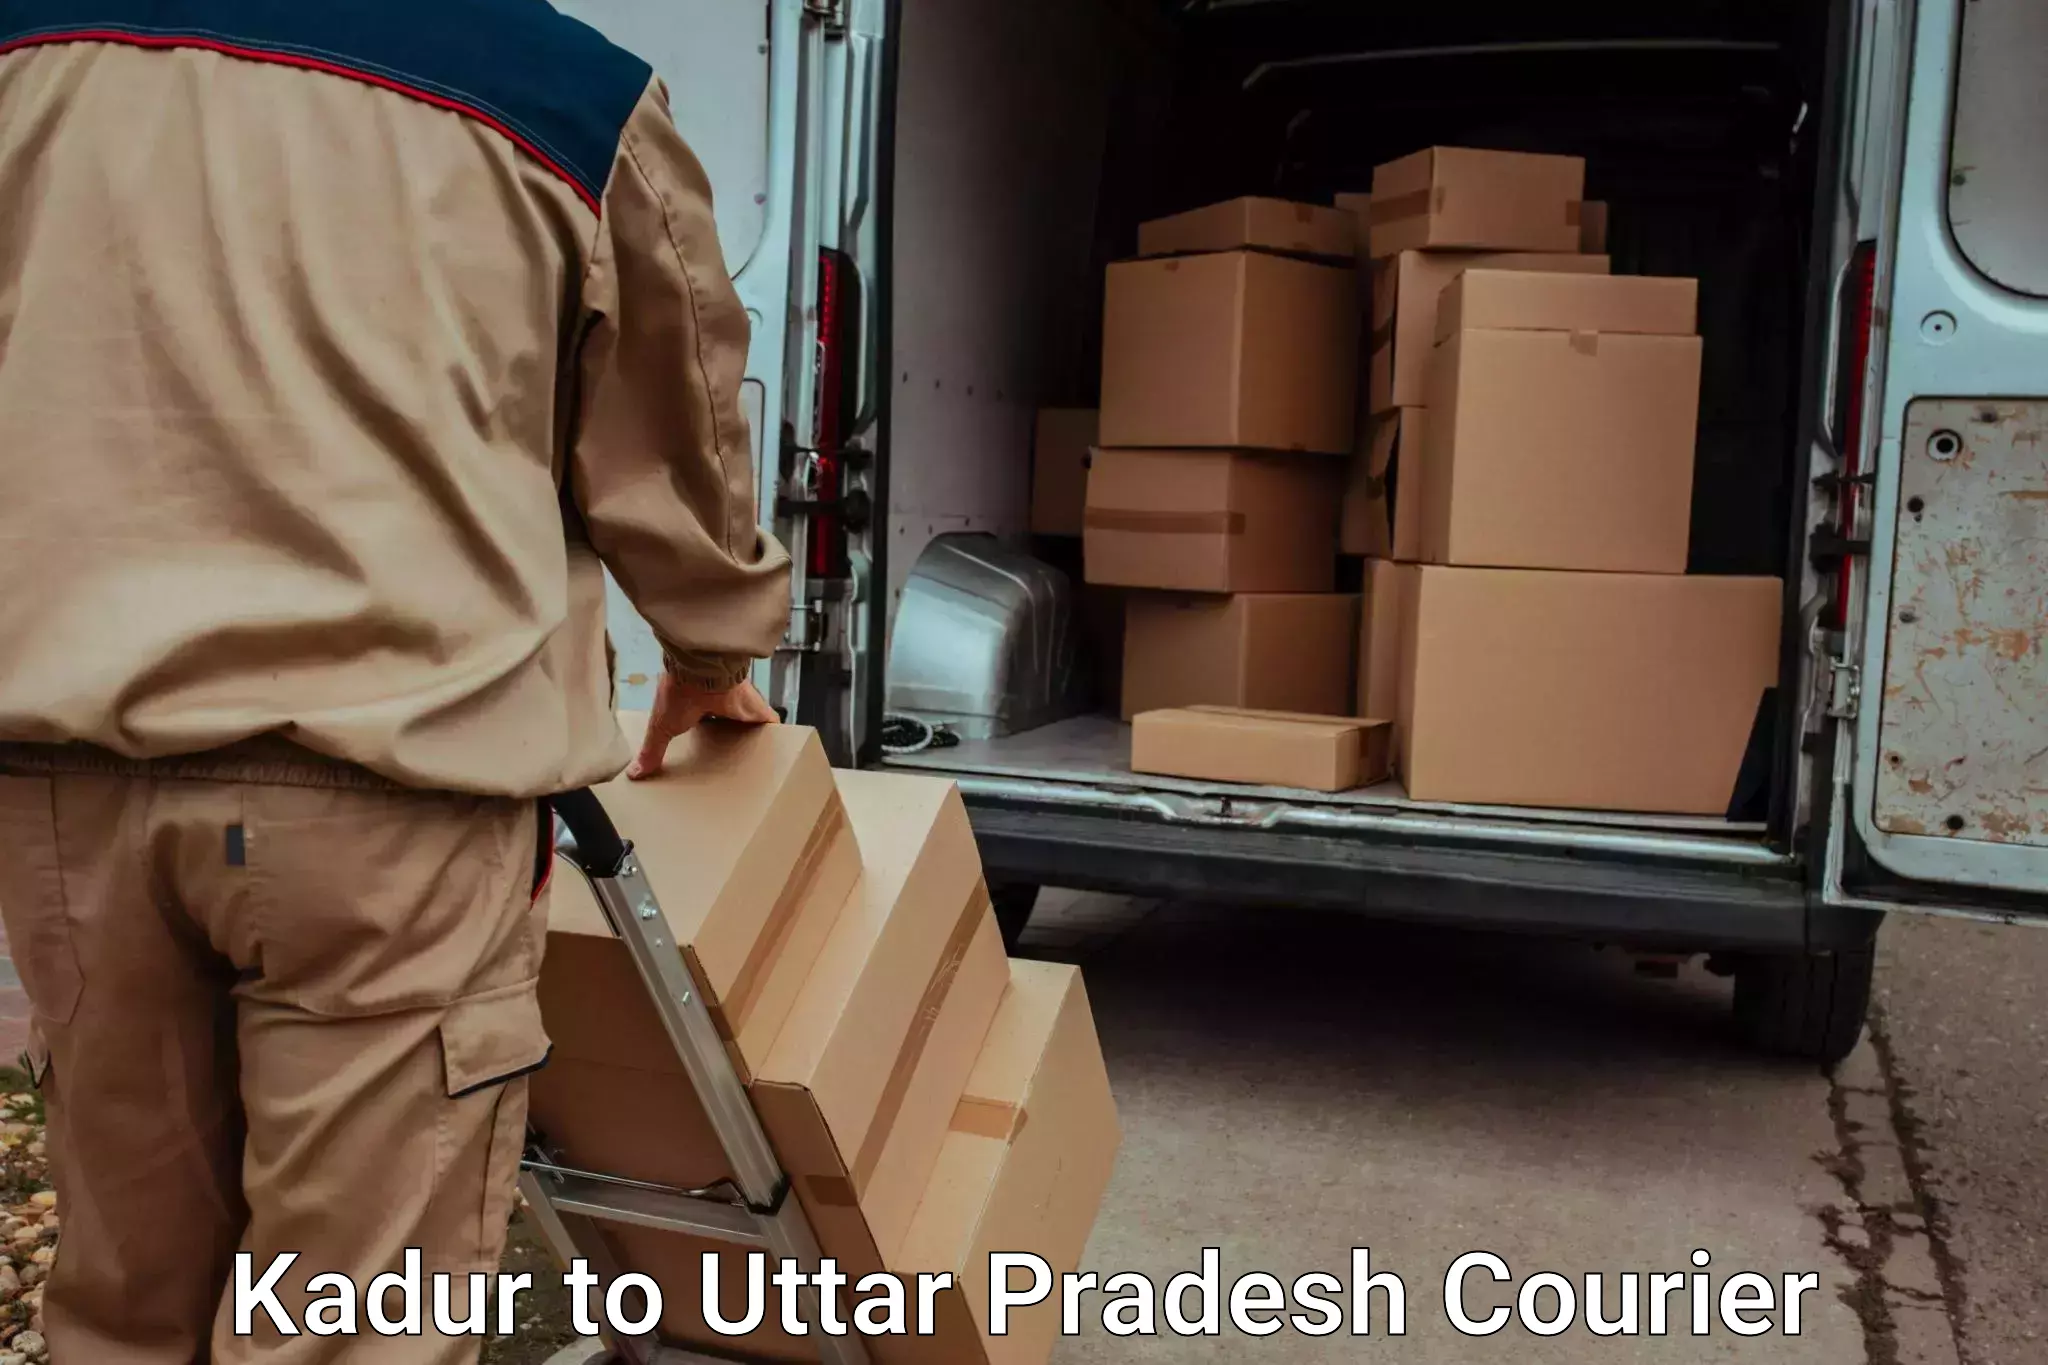 Furniture relocation experts Kadur to Dildar Nagar